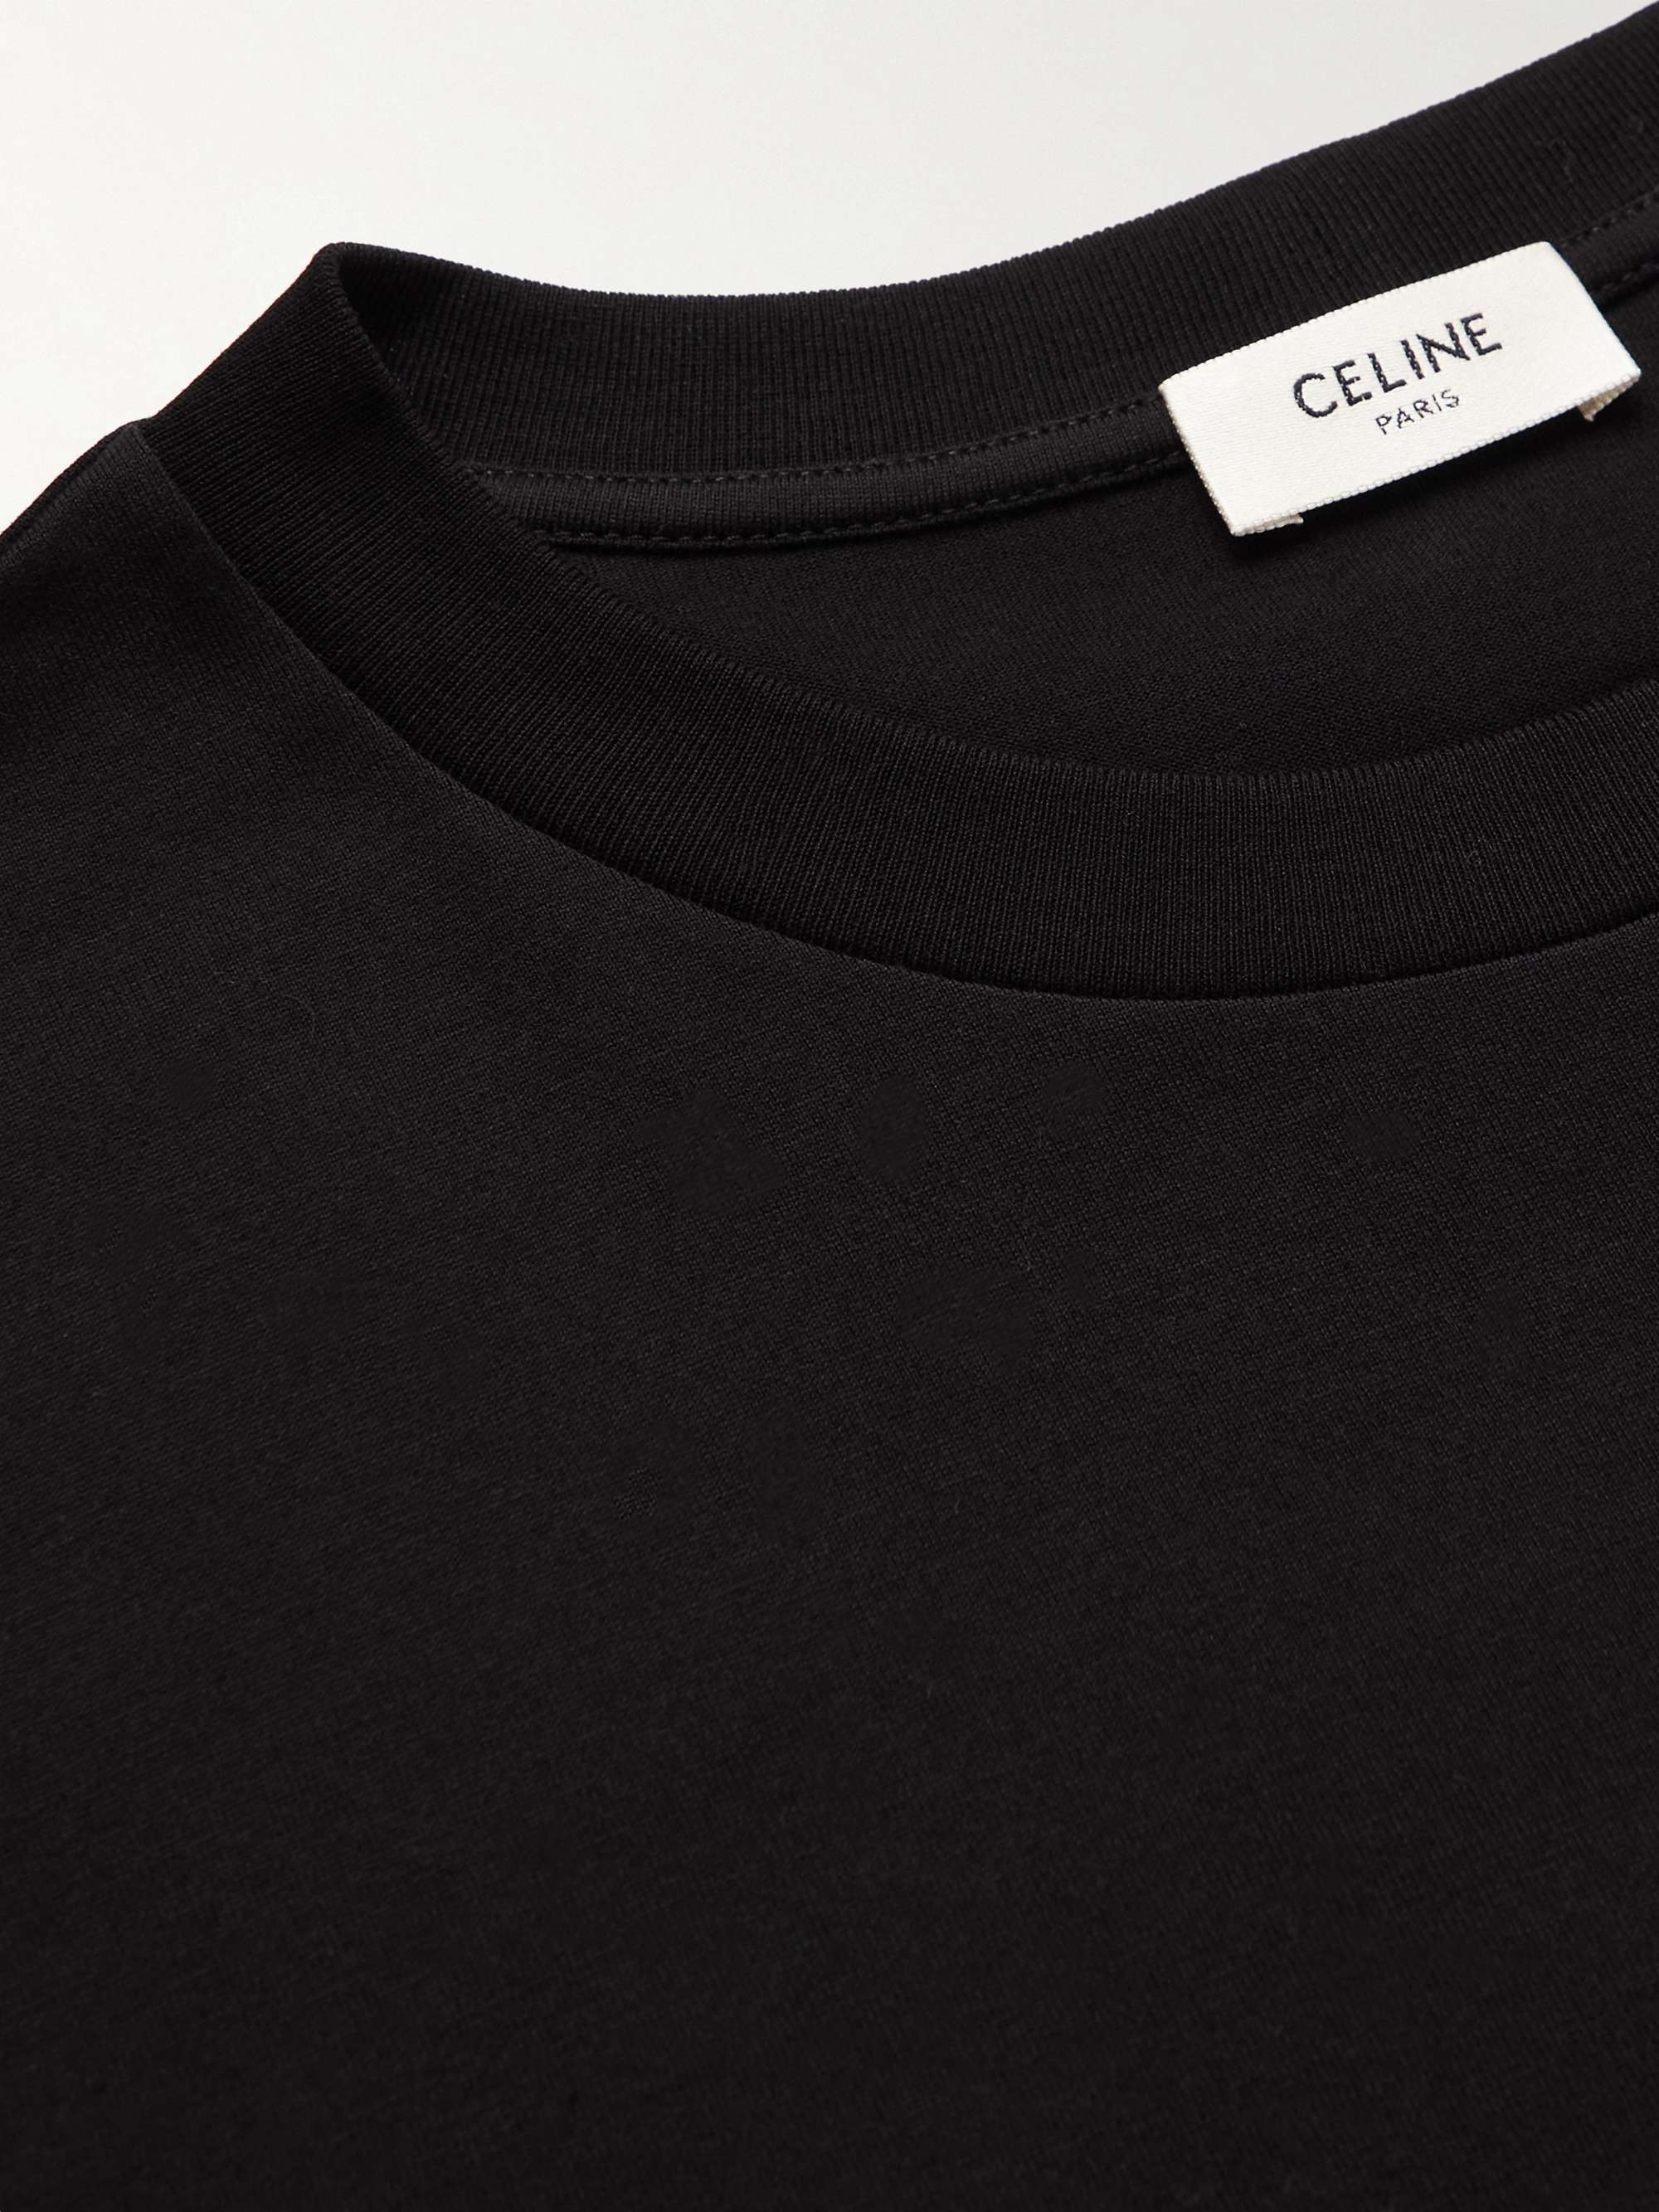 CELINE HOMME Logo-Print Embellished Cotton-Jersey T-Shirt